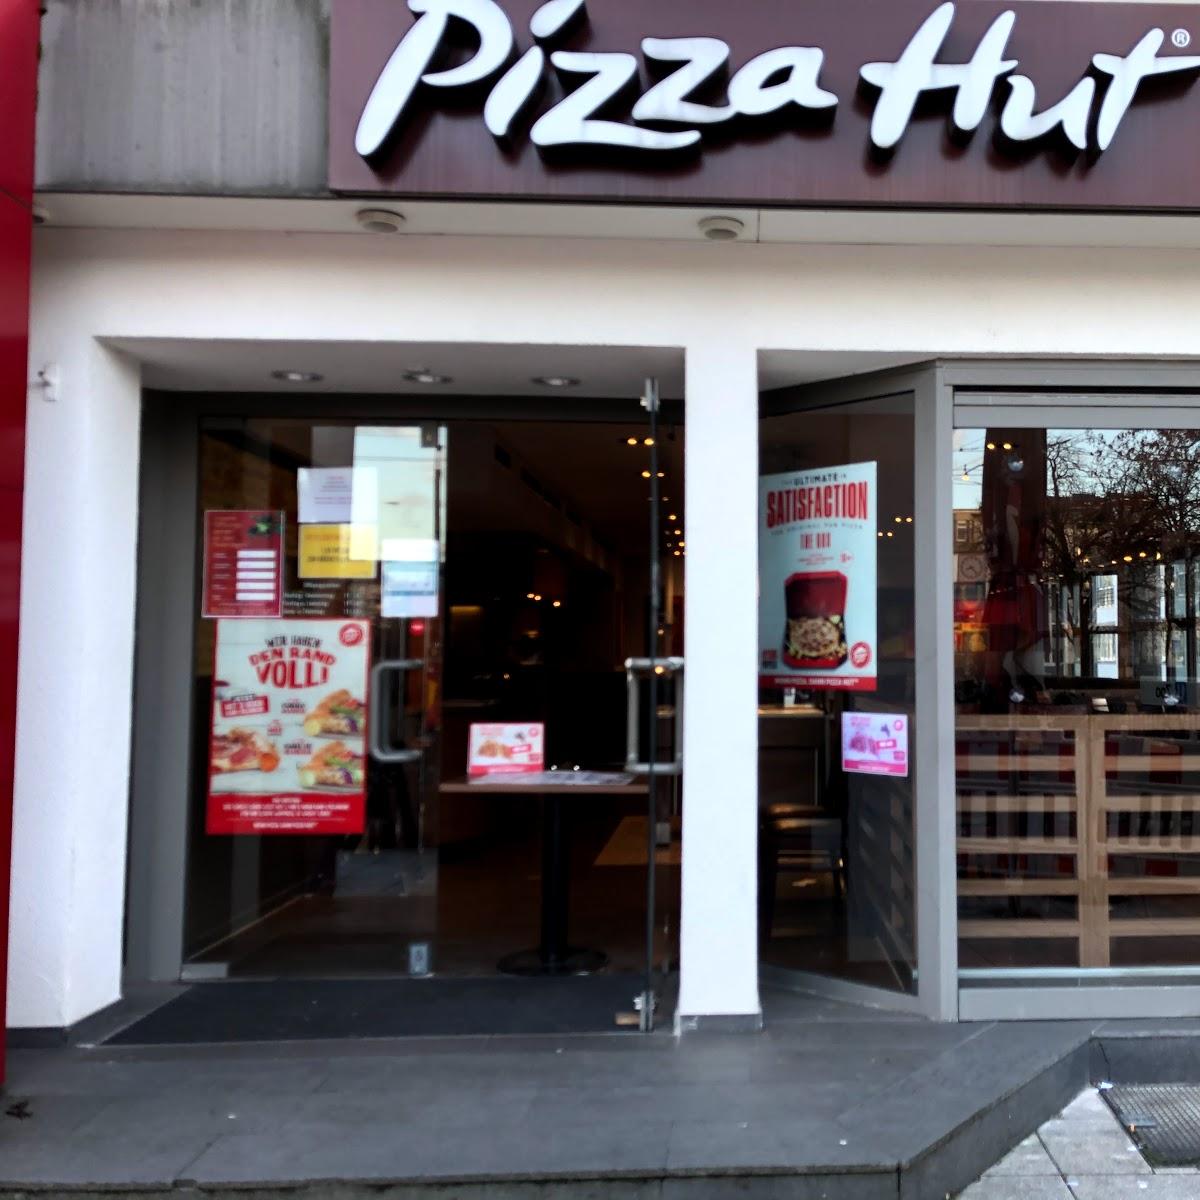 Restaurant "Pizza Hut Frankfurt" in Frankfurt am Main